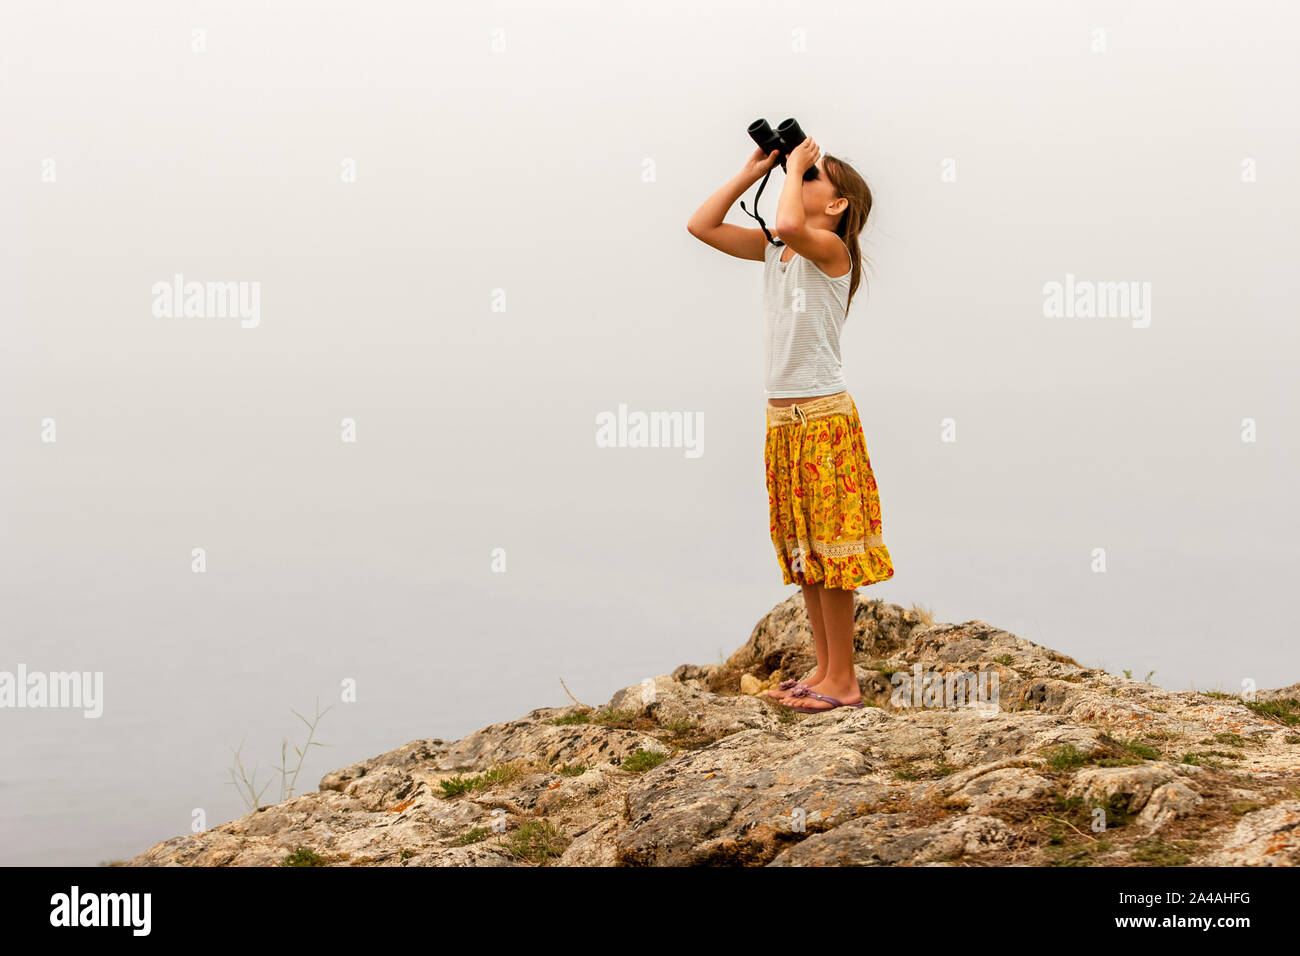 Bambino ragazza traveler sorge su una roccia sopra l'acqua e si guarda attraverso il binocolo in cielo. T-shirt e colorato di giallo gonna. Foto Stock